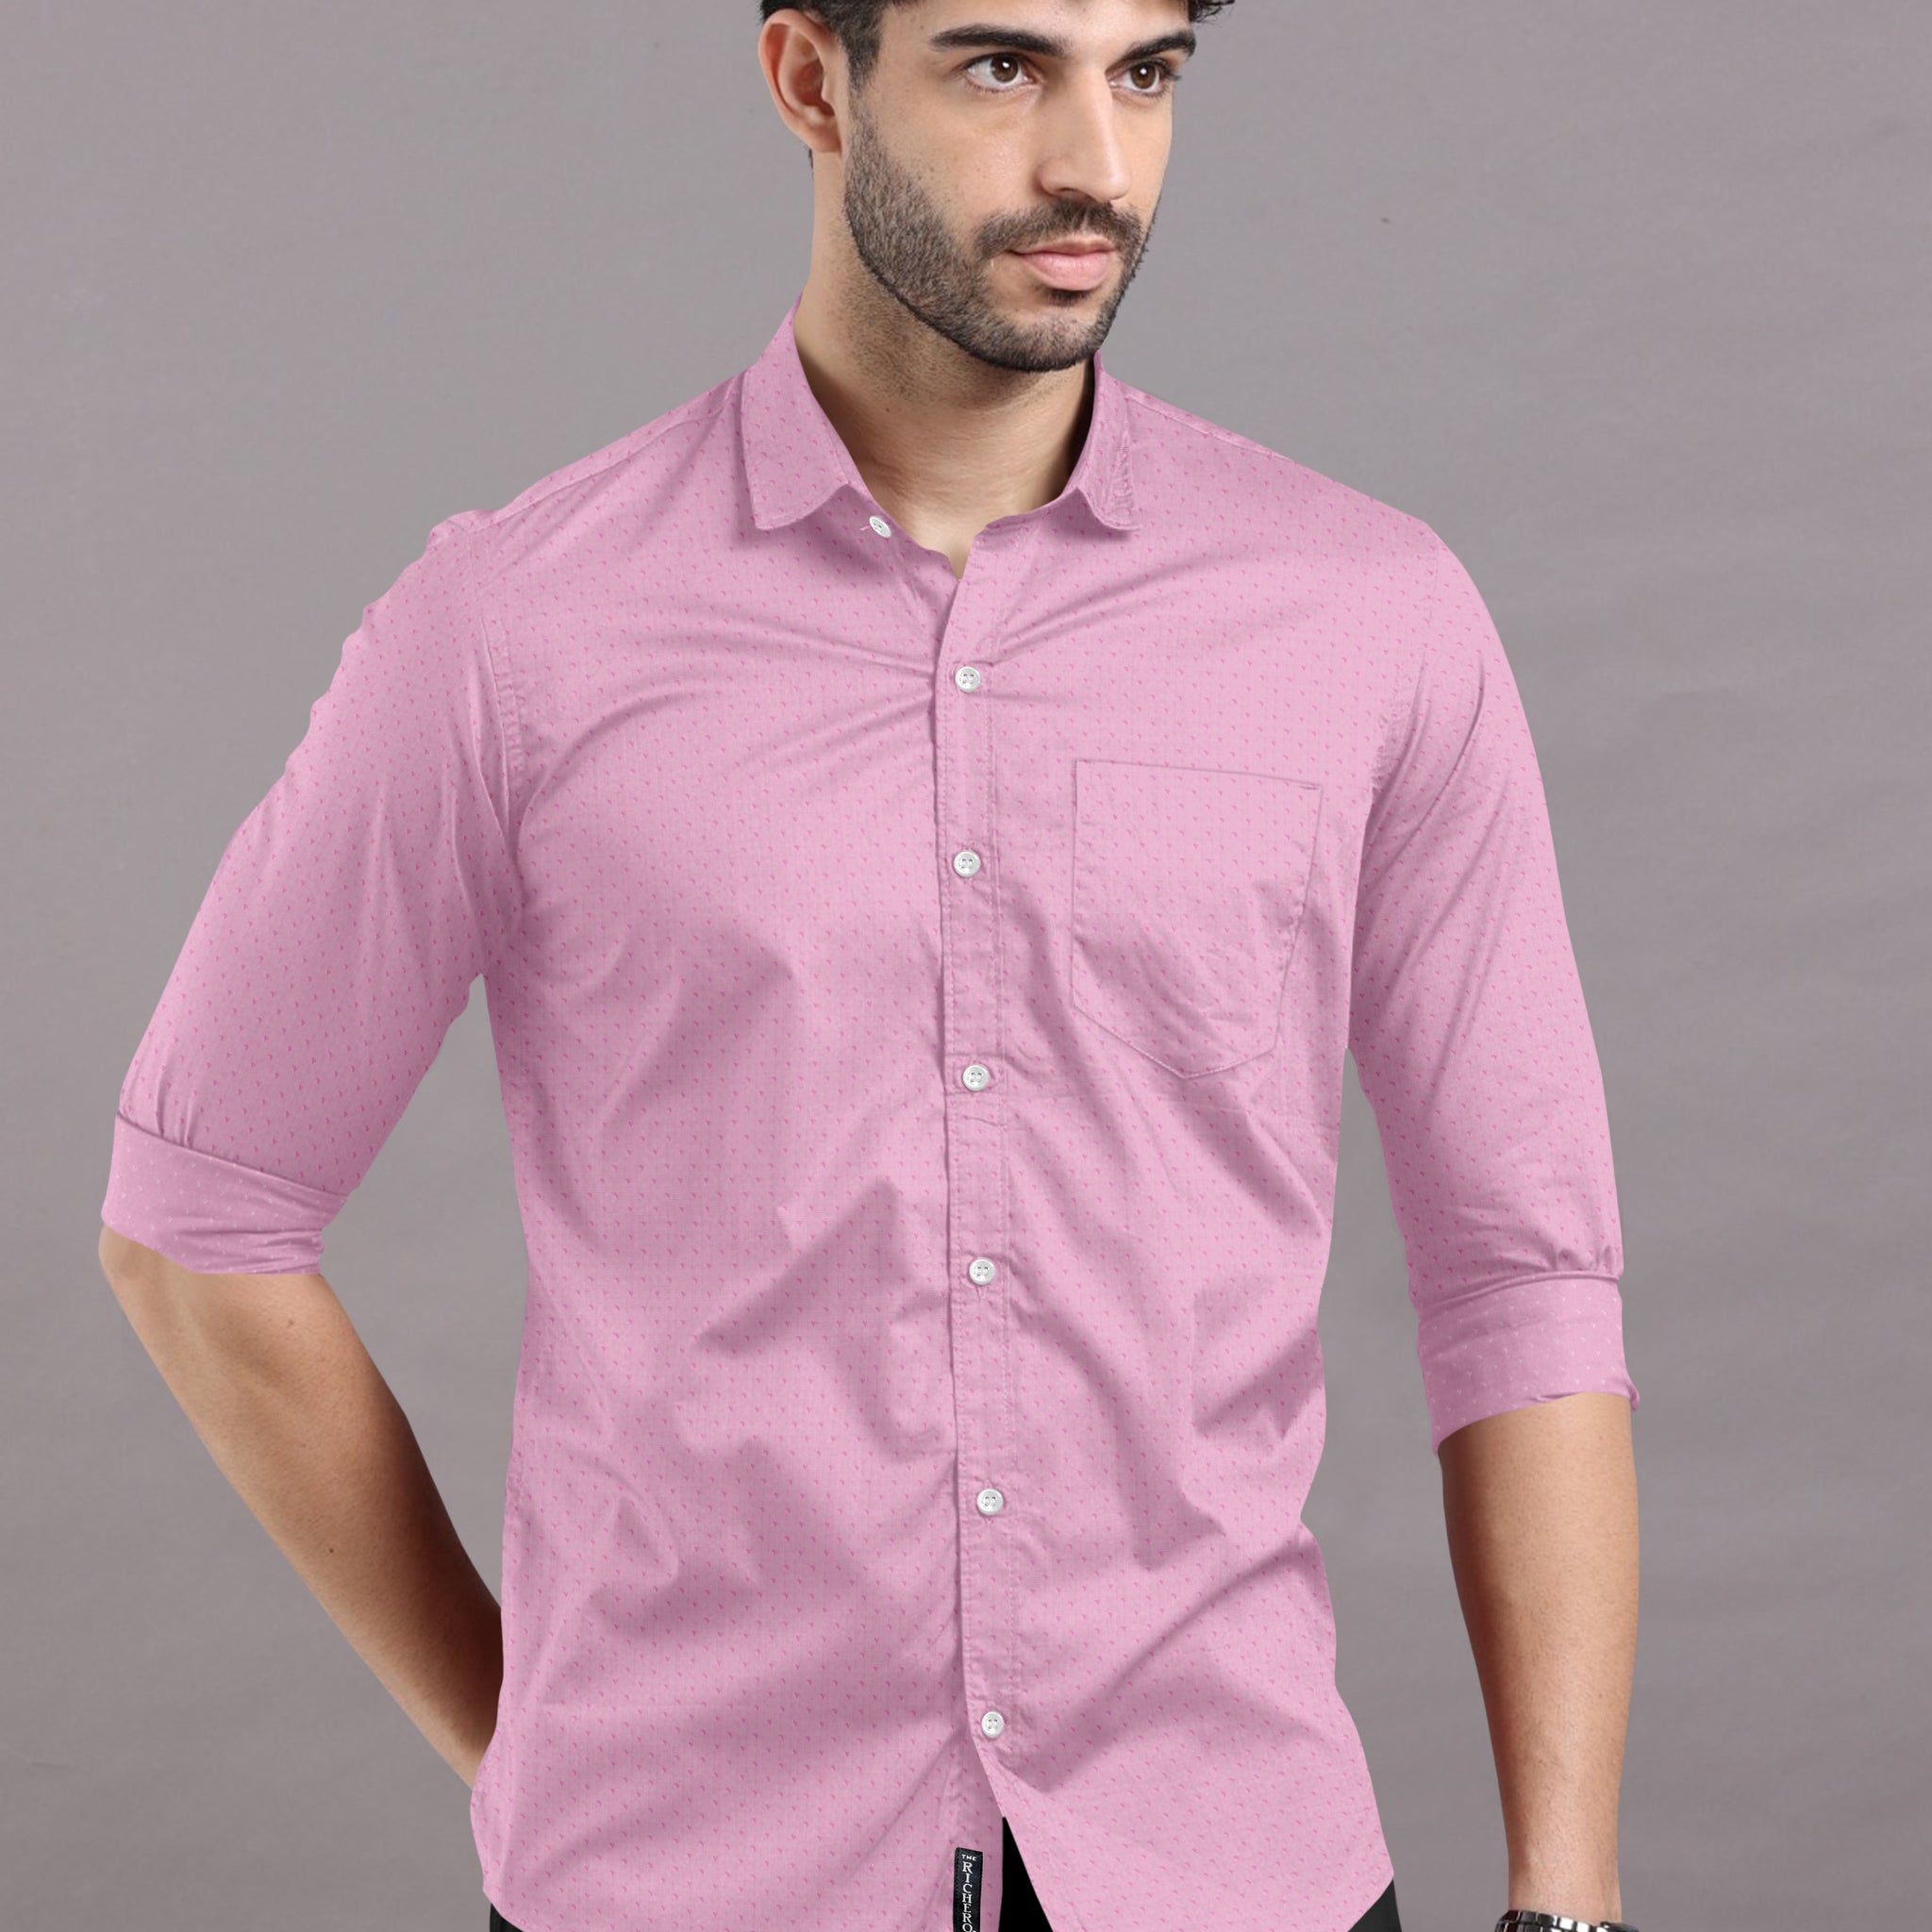 Plain Lemonade Pink Elegance Shirt